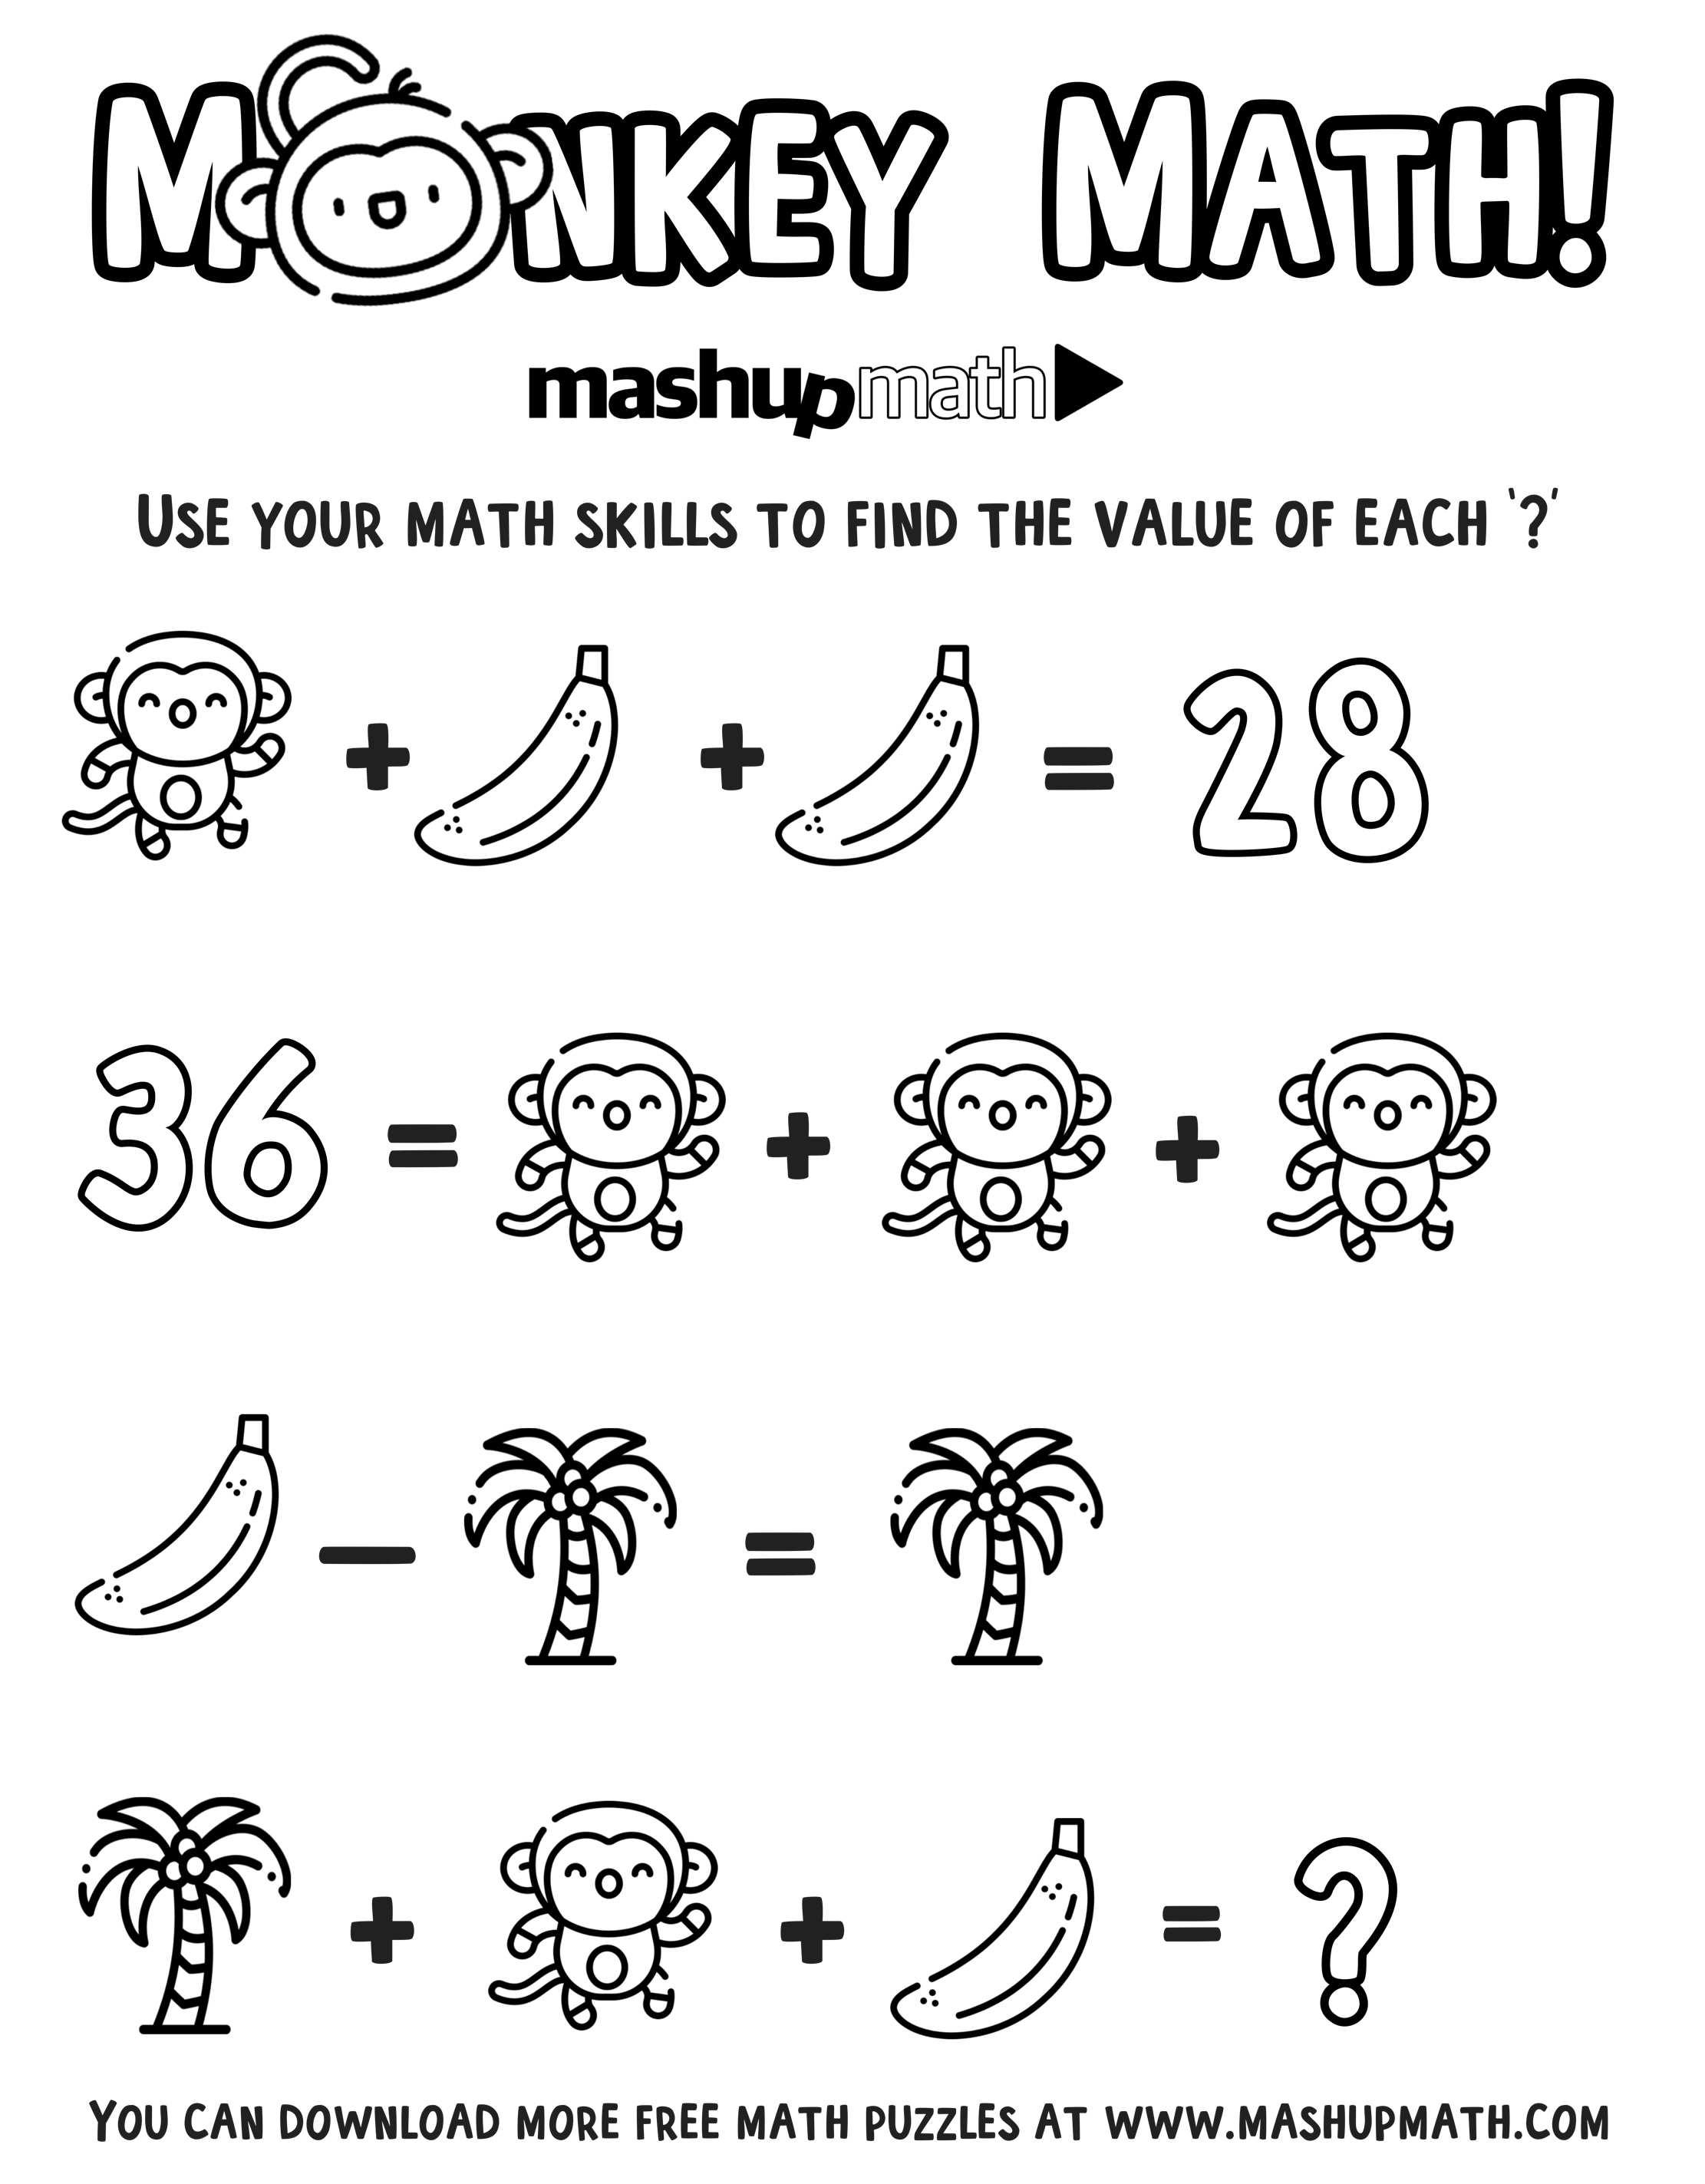 free-math-coloring-worksheets-for-grades-1-8-mashup-math